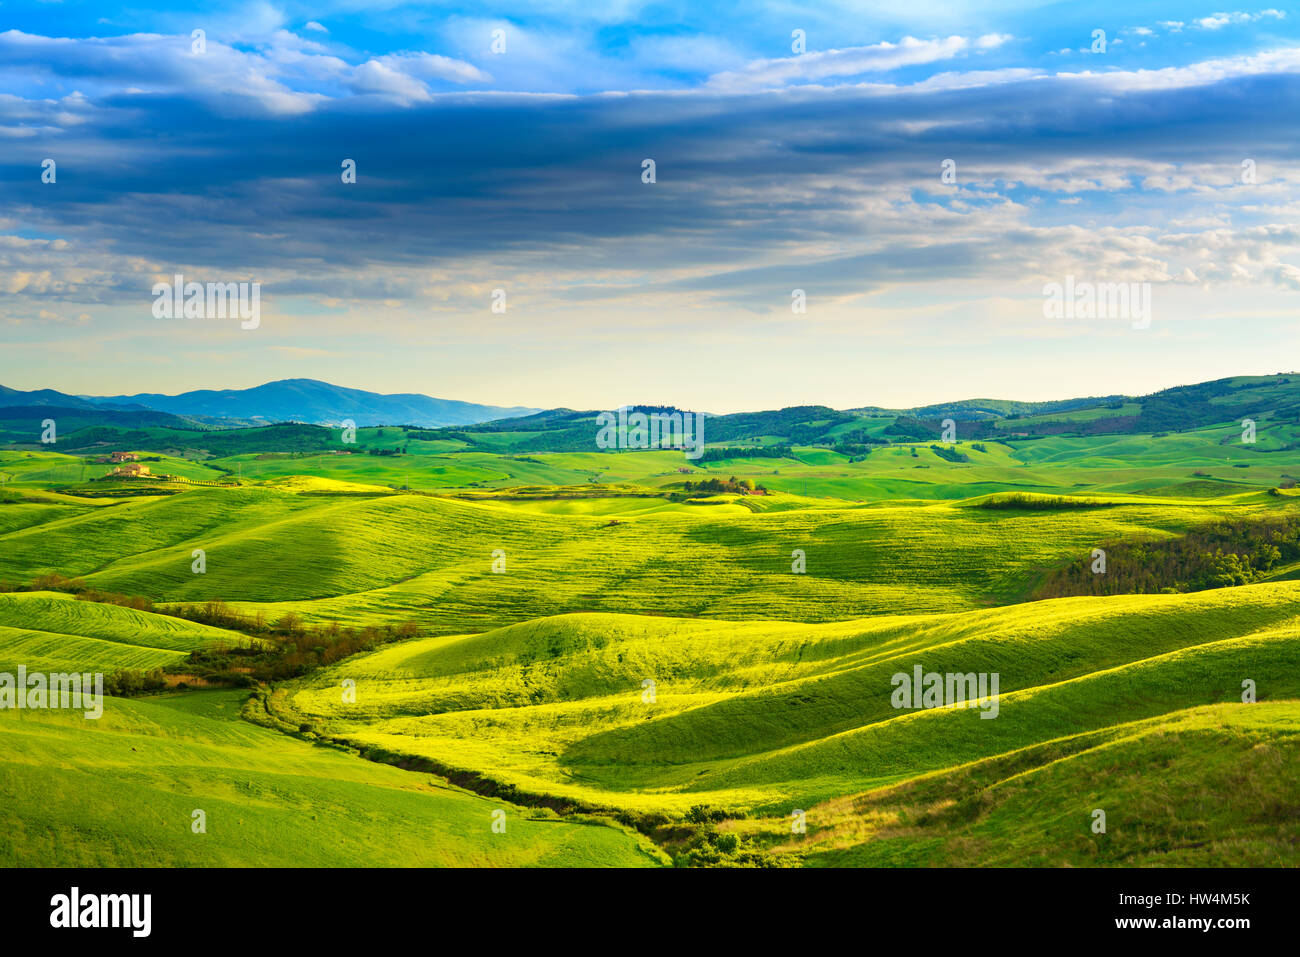 Tuscany Frühling, sanften Hügeln am Sonnenuntergang. Landschaft im ländlichen Raum. Grüne Wiesen und Ackerland. Volterra, Italien, Europa Stockfoto